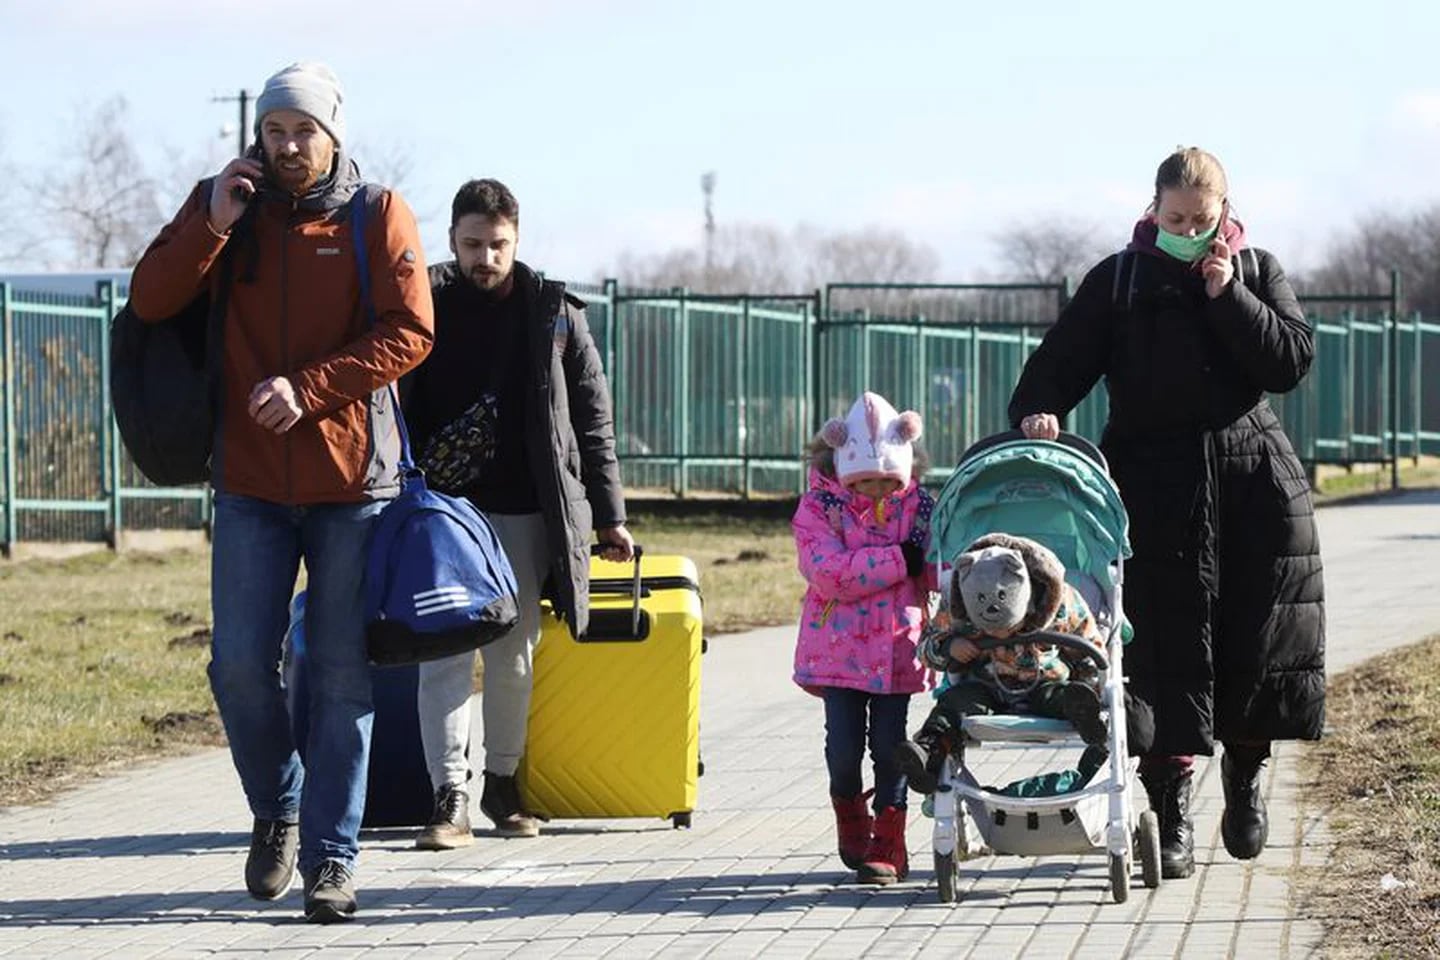 Adultos y niños caminan en un paso fronterizo entre Polonia y Ucrania, después de que el presidente ruso Vladimir Putin autorizara una operación militar en el este de Ucrania, en Medyka, Polonia. 24 de febrero de 2022. REUTERS/Kacper Pempel